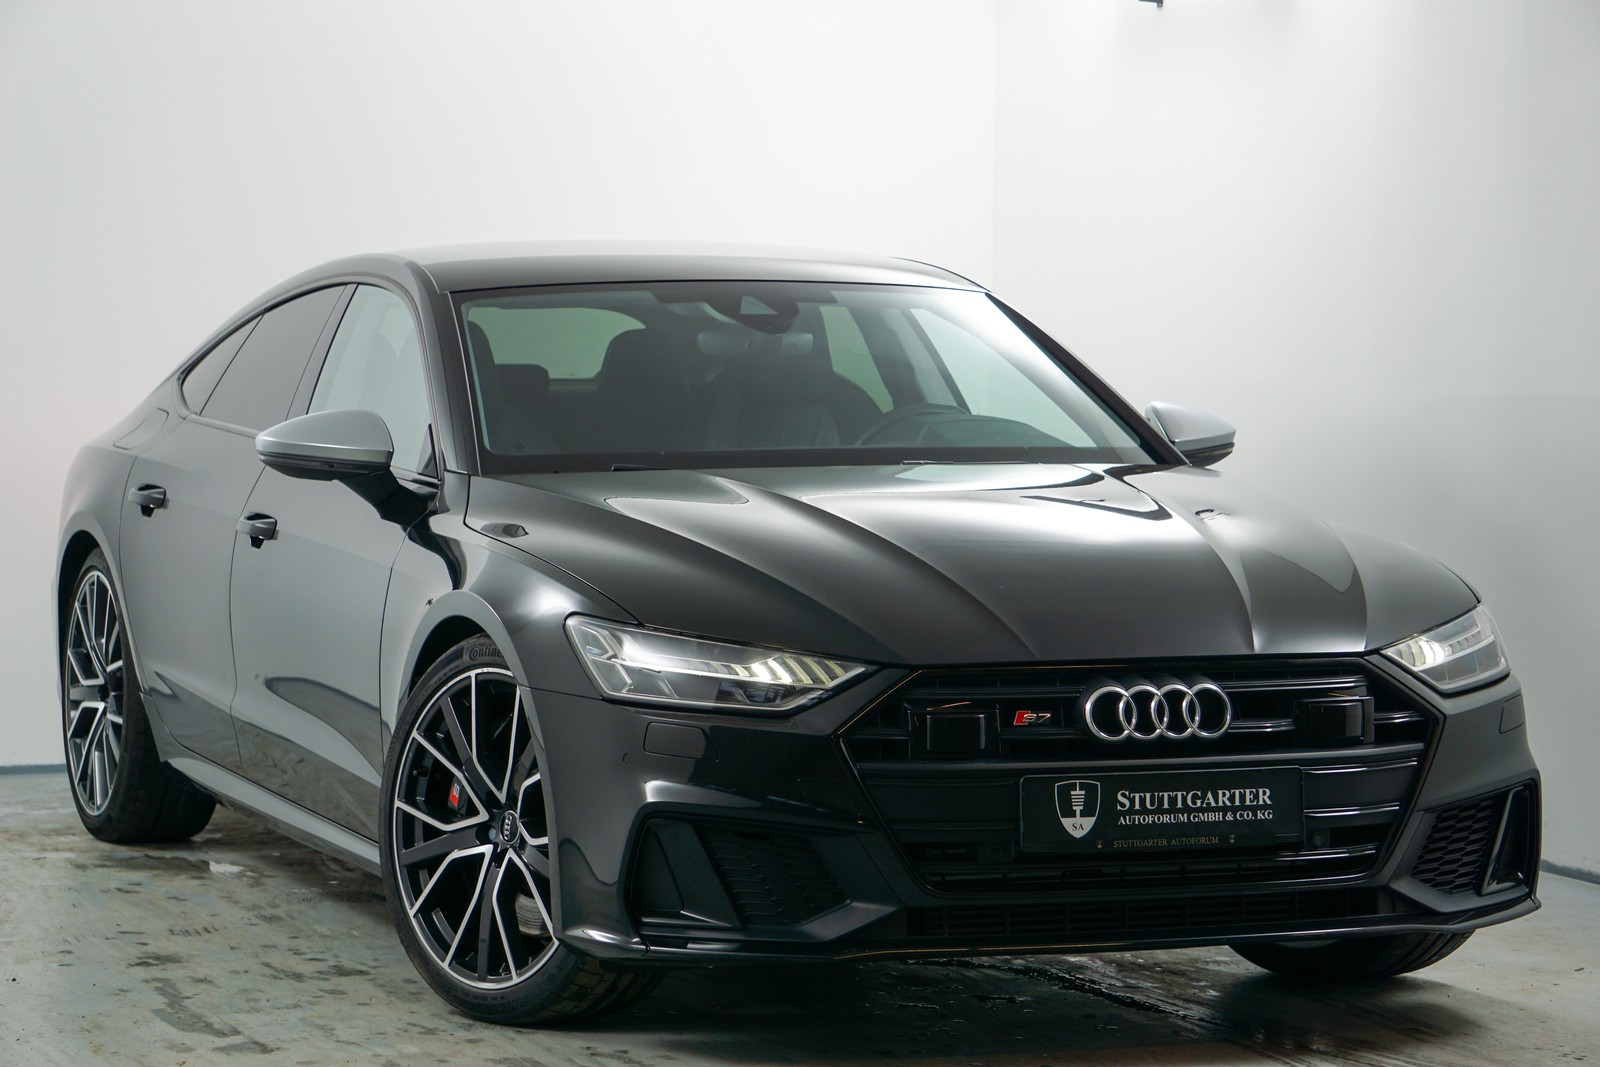 Audi S7 Sportback gebraucht kaufen in Kupferzell Preis 54800 eur